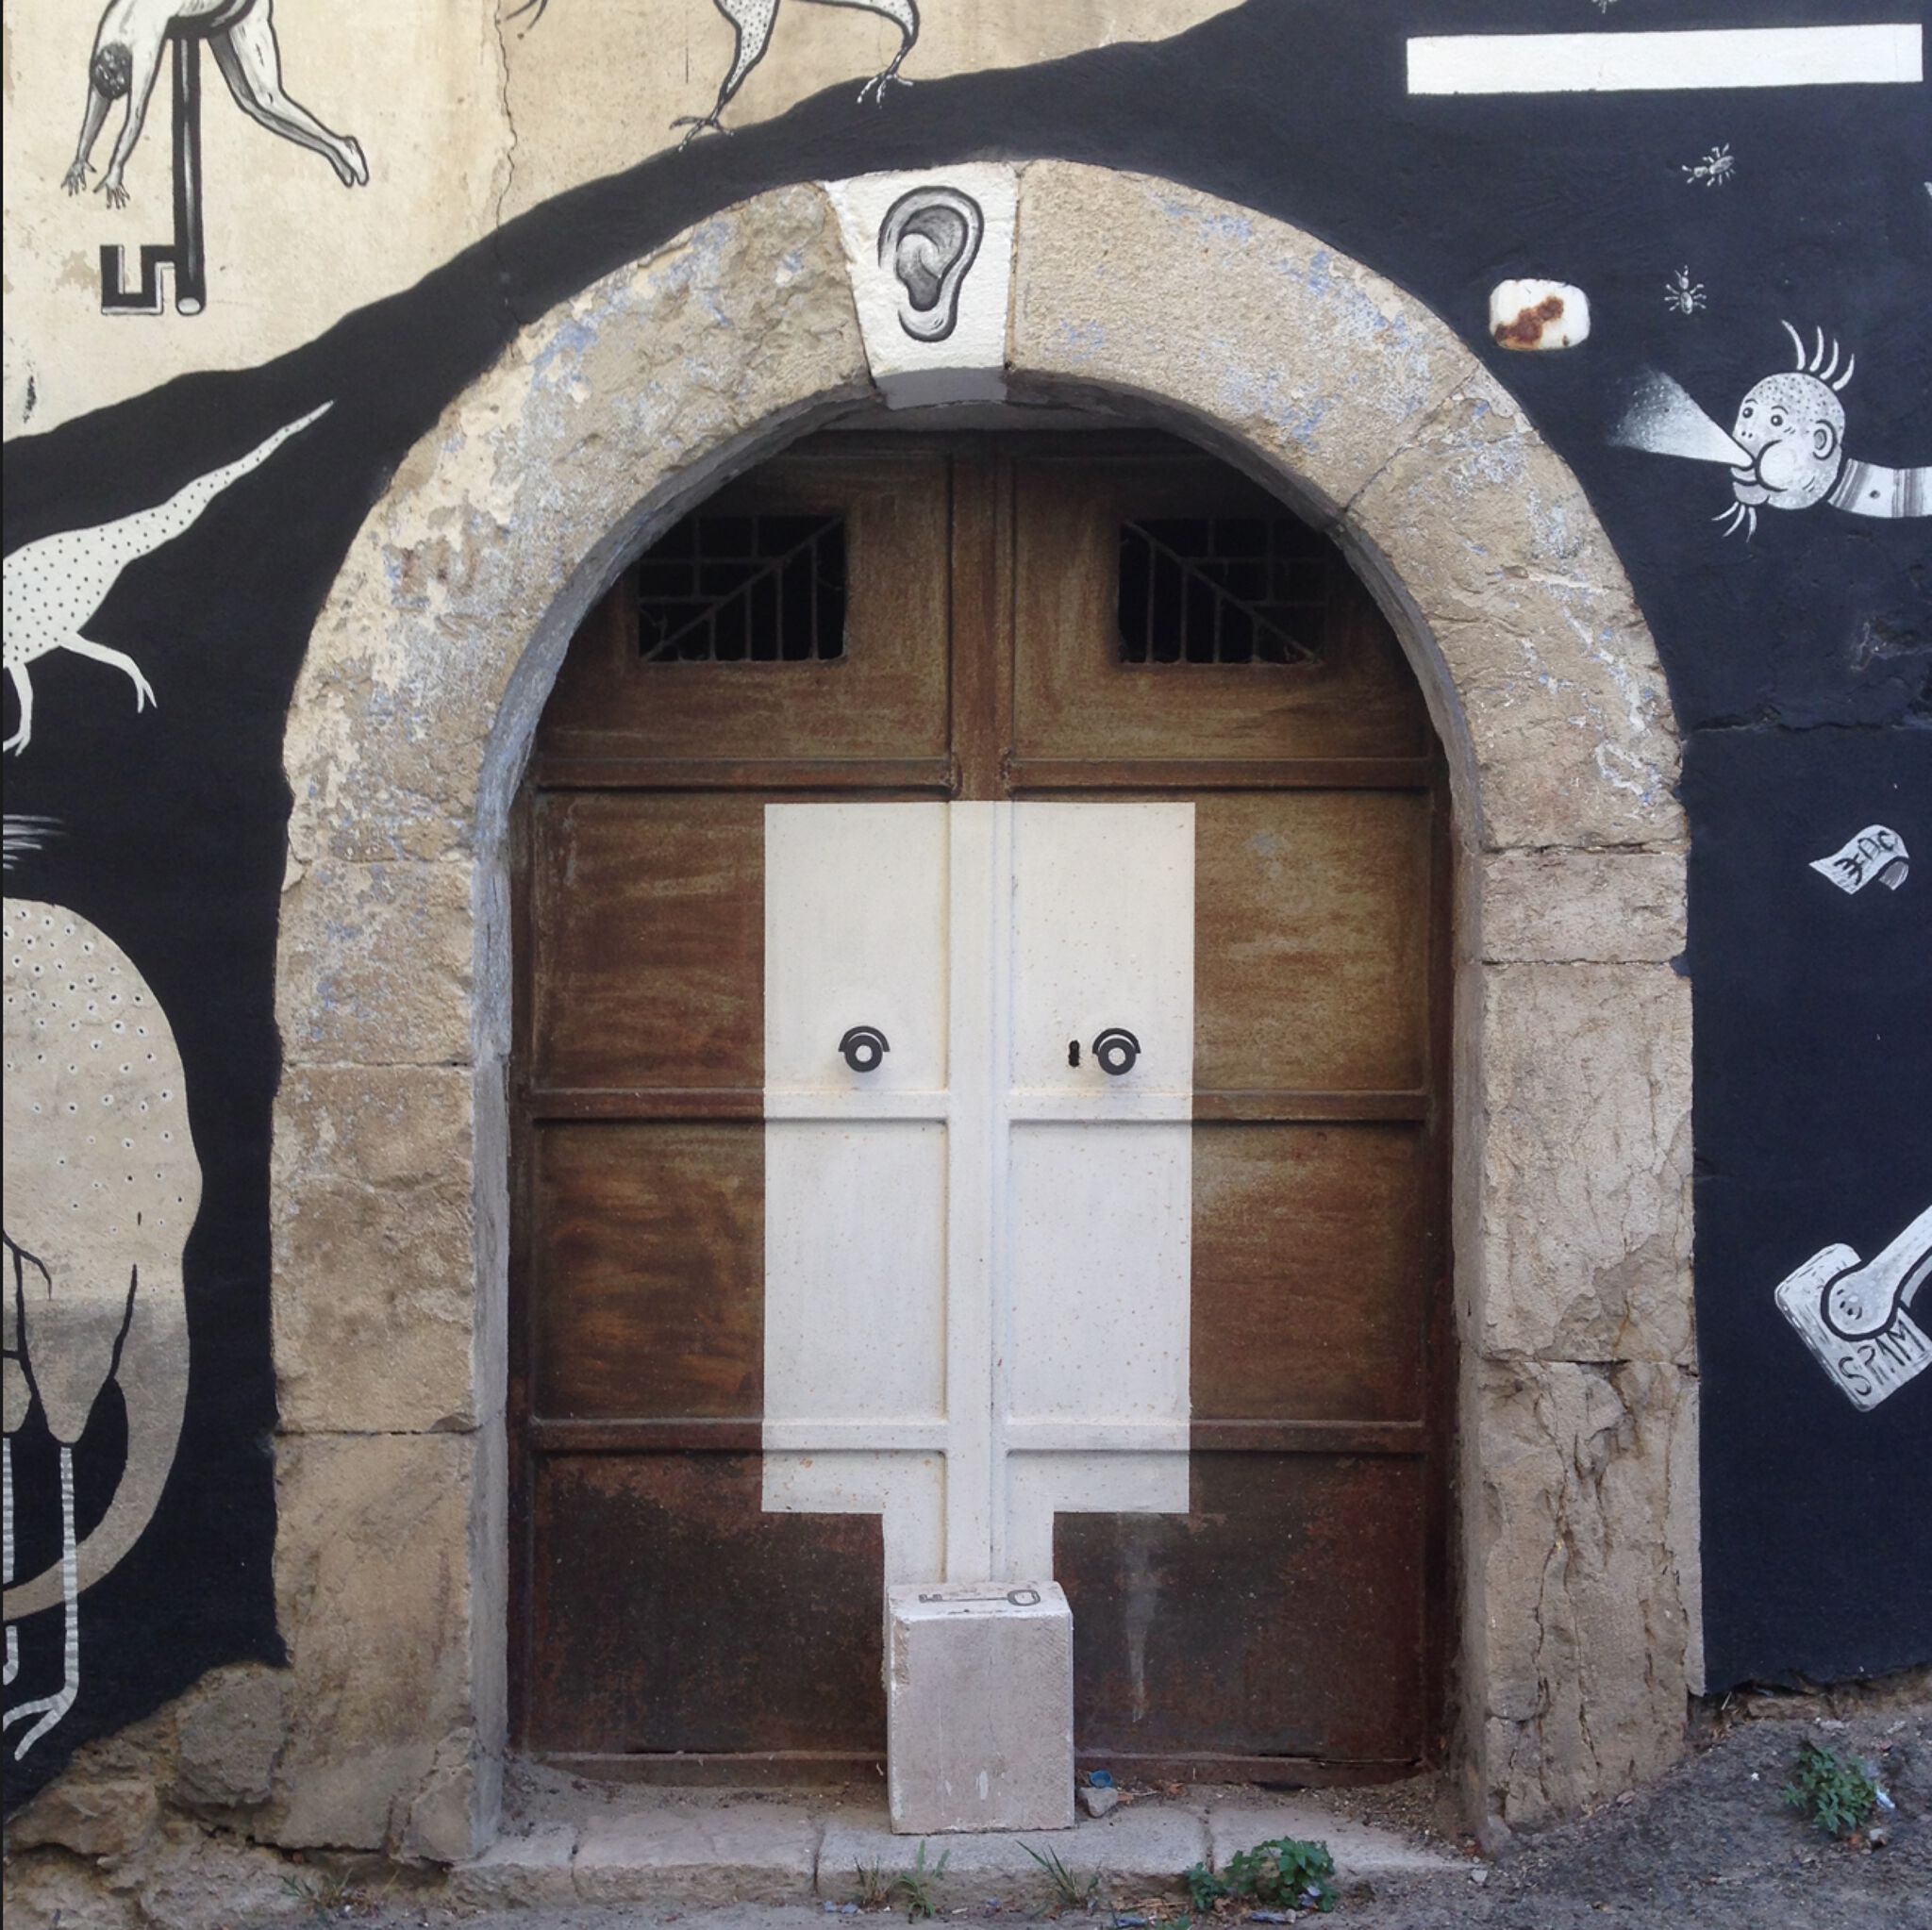 guerrilla spam&mdash;La fine dell'avaro + La finta porta -  The end of the miser + The fake door